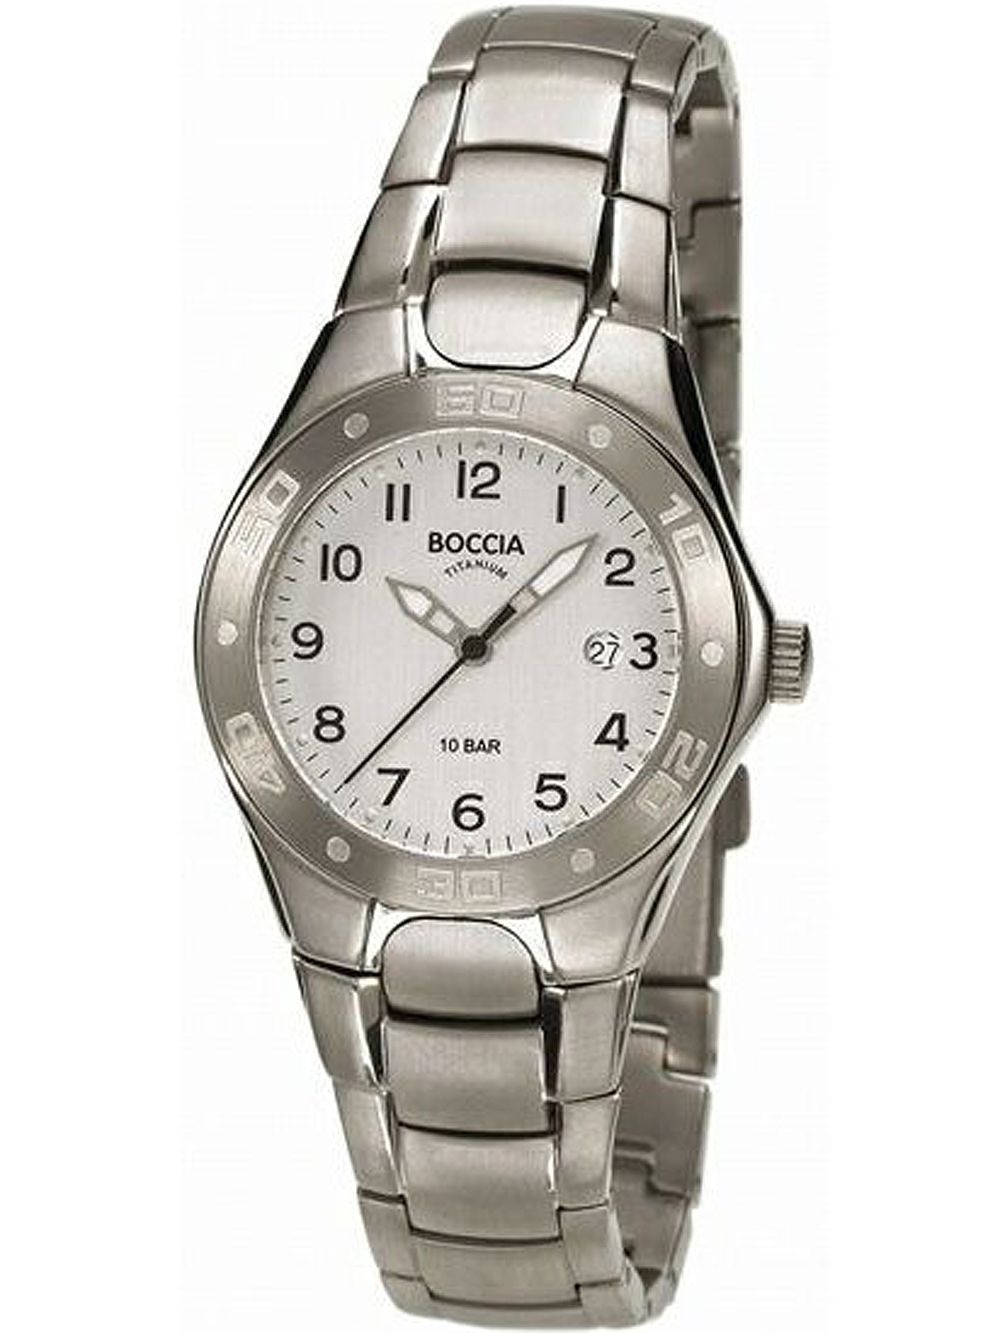 Dámské hodinky Boccia 3119-10 ladies watch titanium 31mm 10ATM